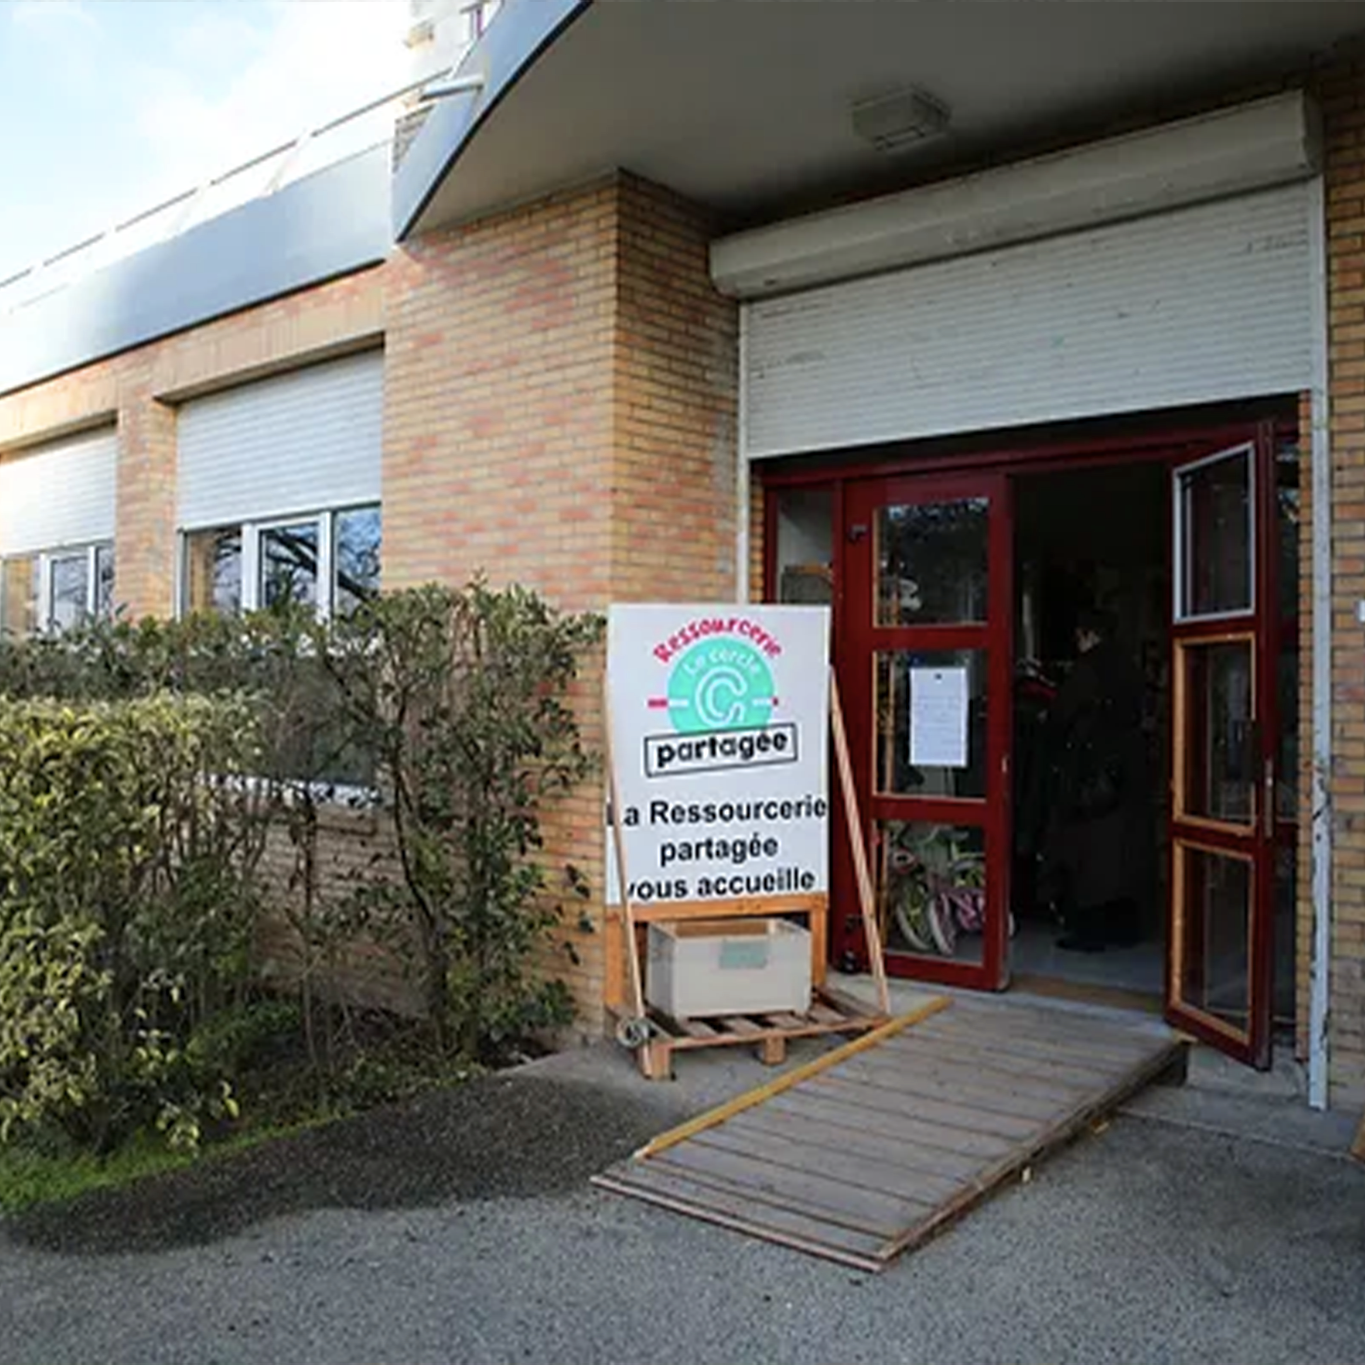 Image d'extérieur de la Ressourcerie Partagée, kakémono devant la porte d'entrée du lieu